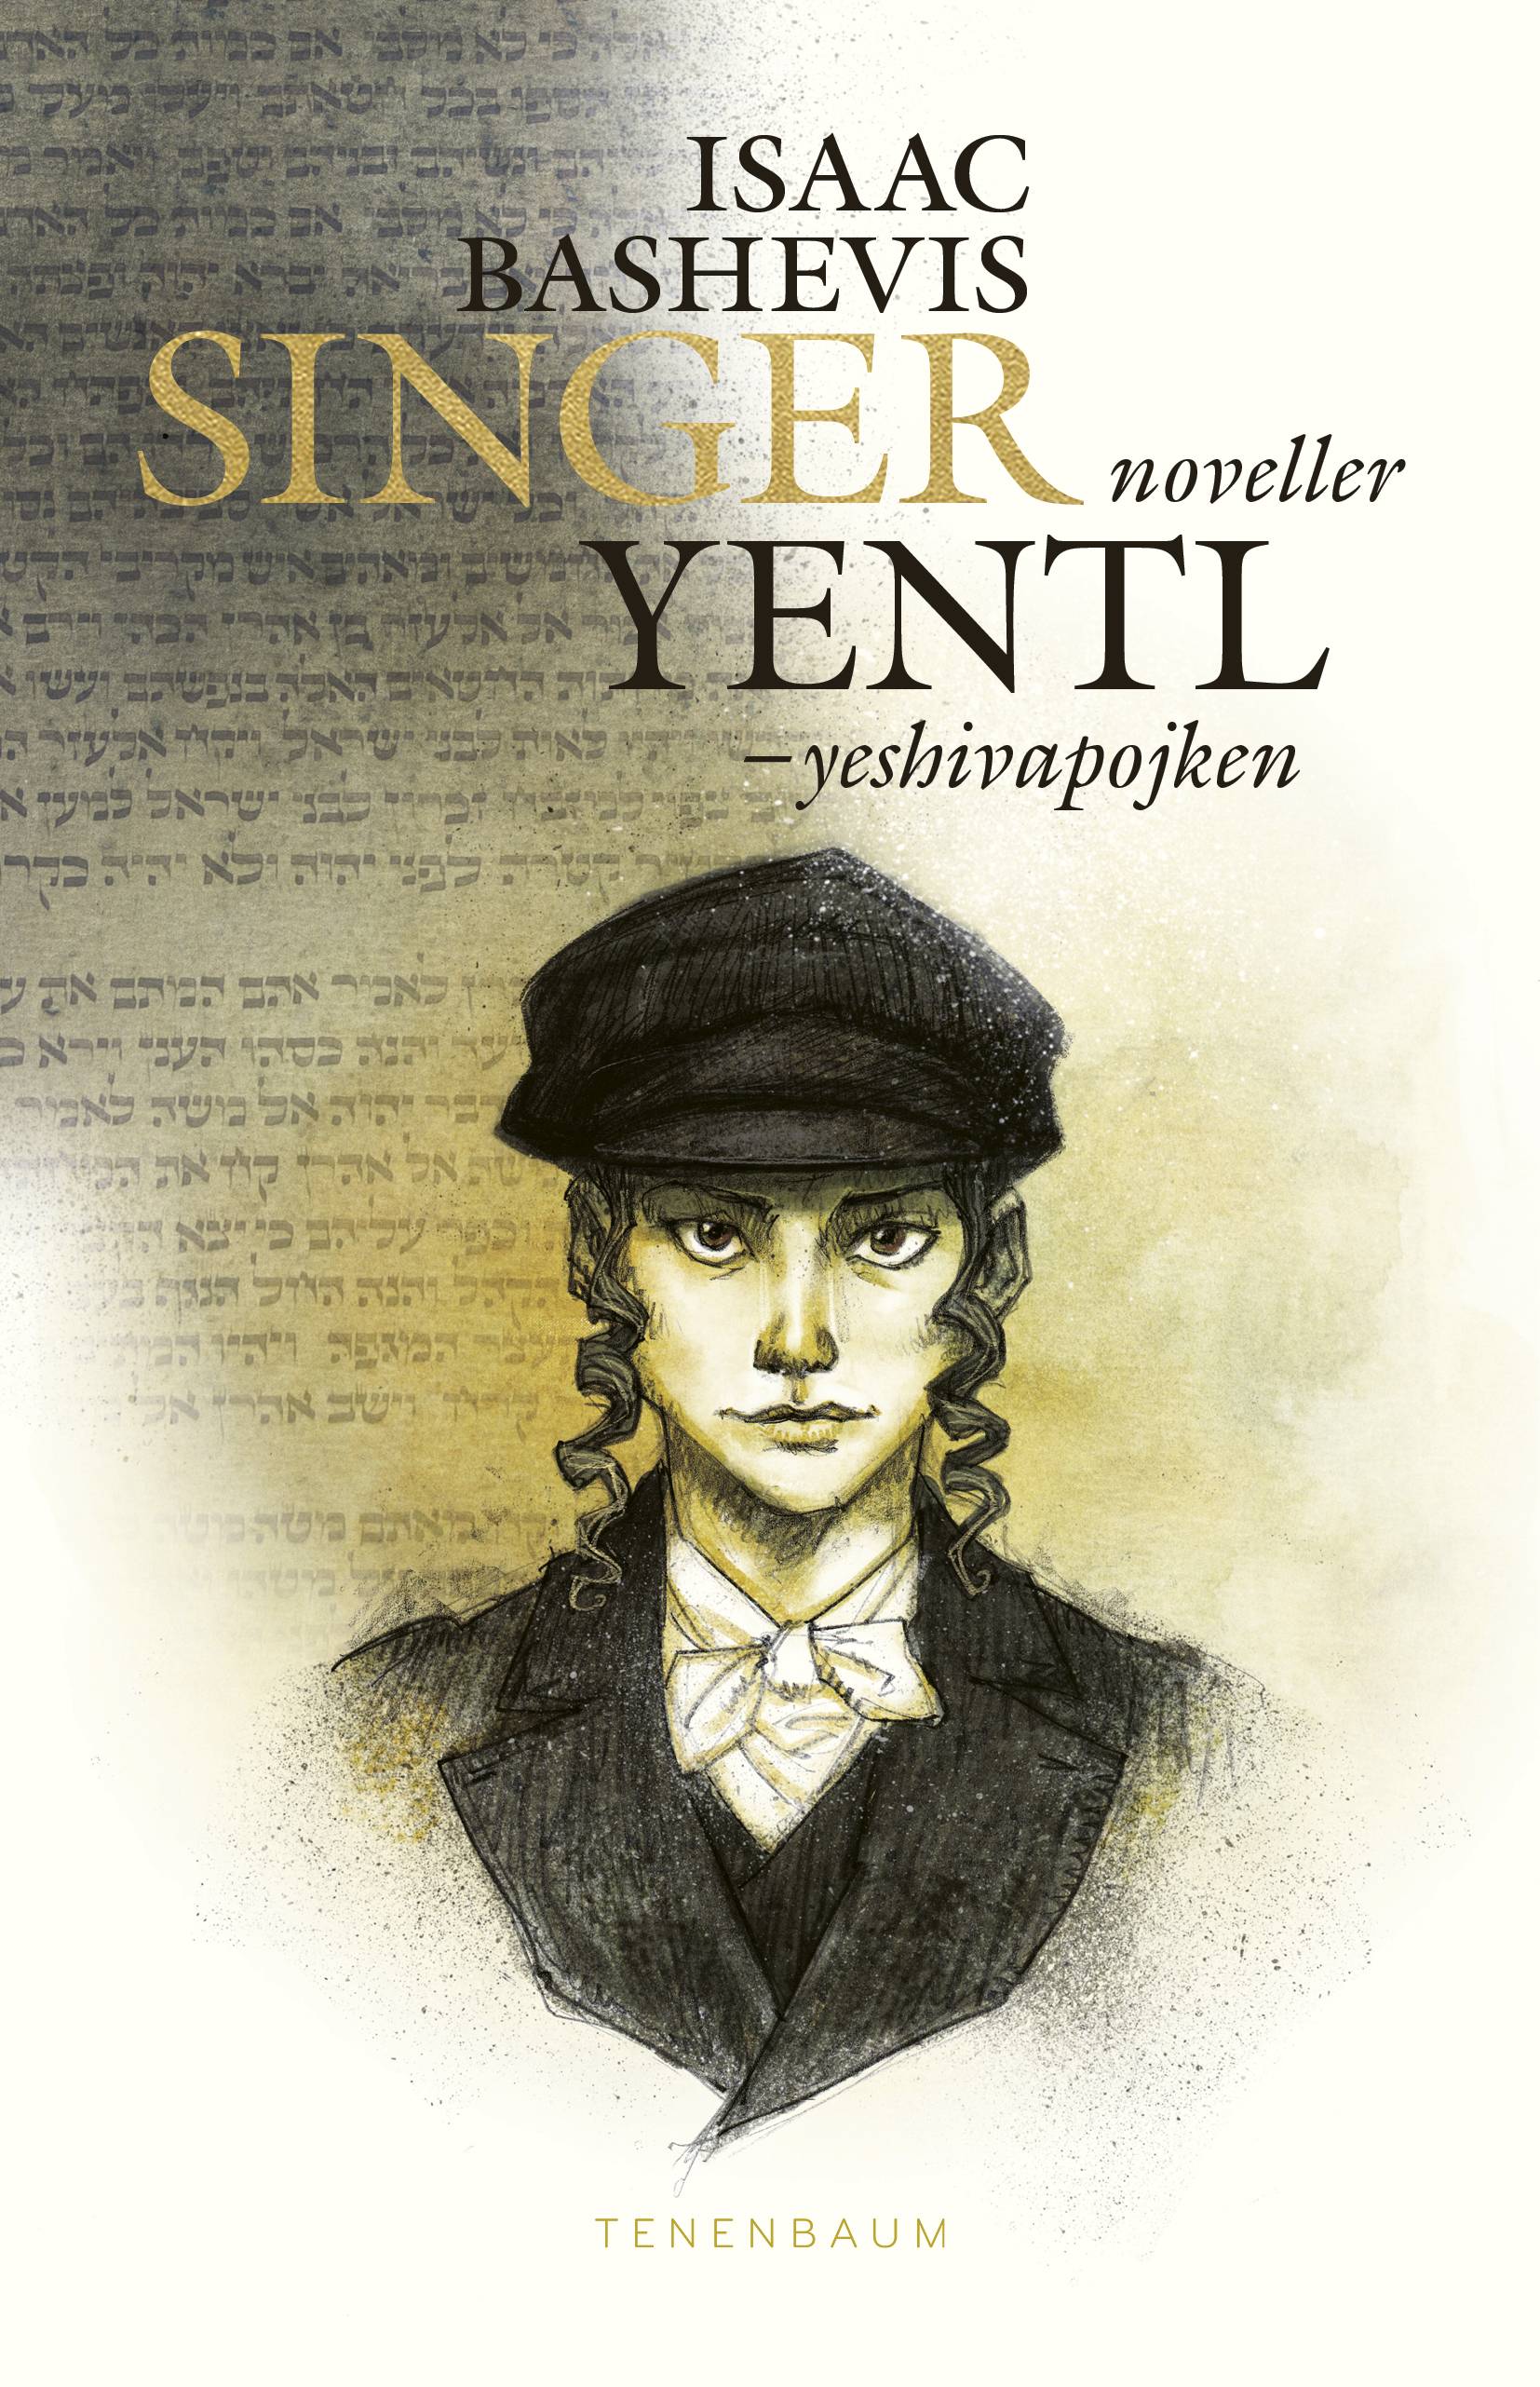 Yentl : yeshivapojken